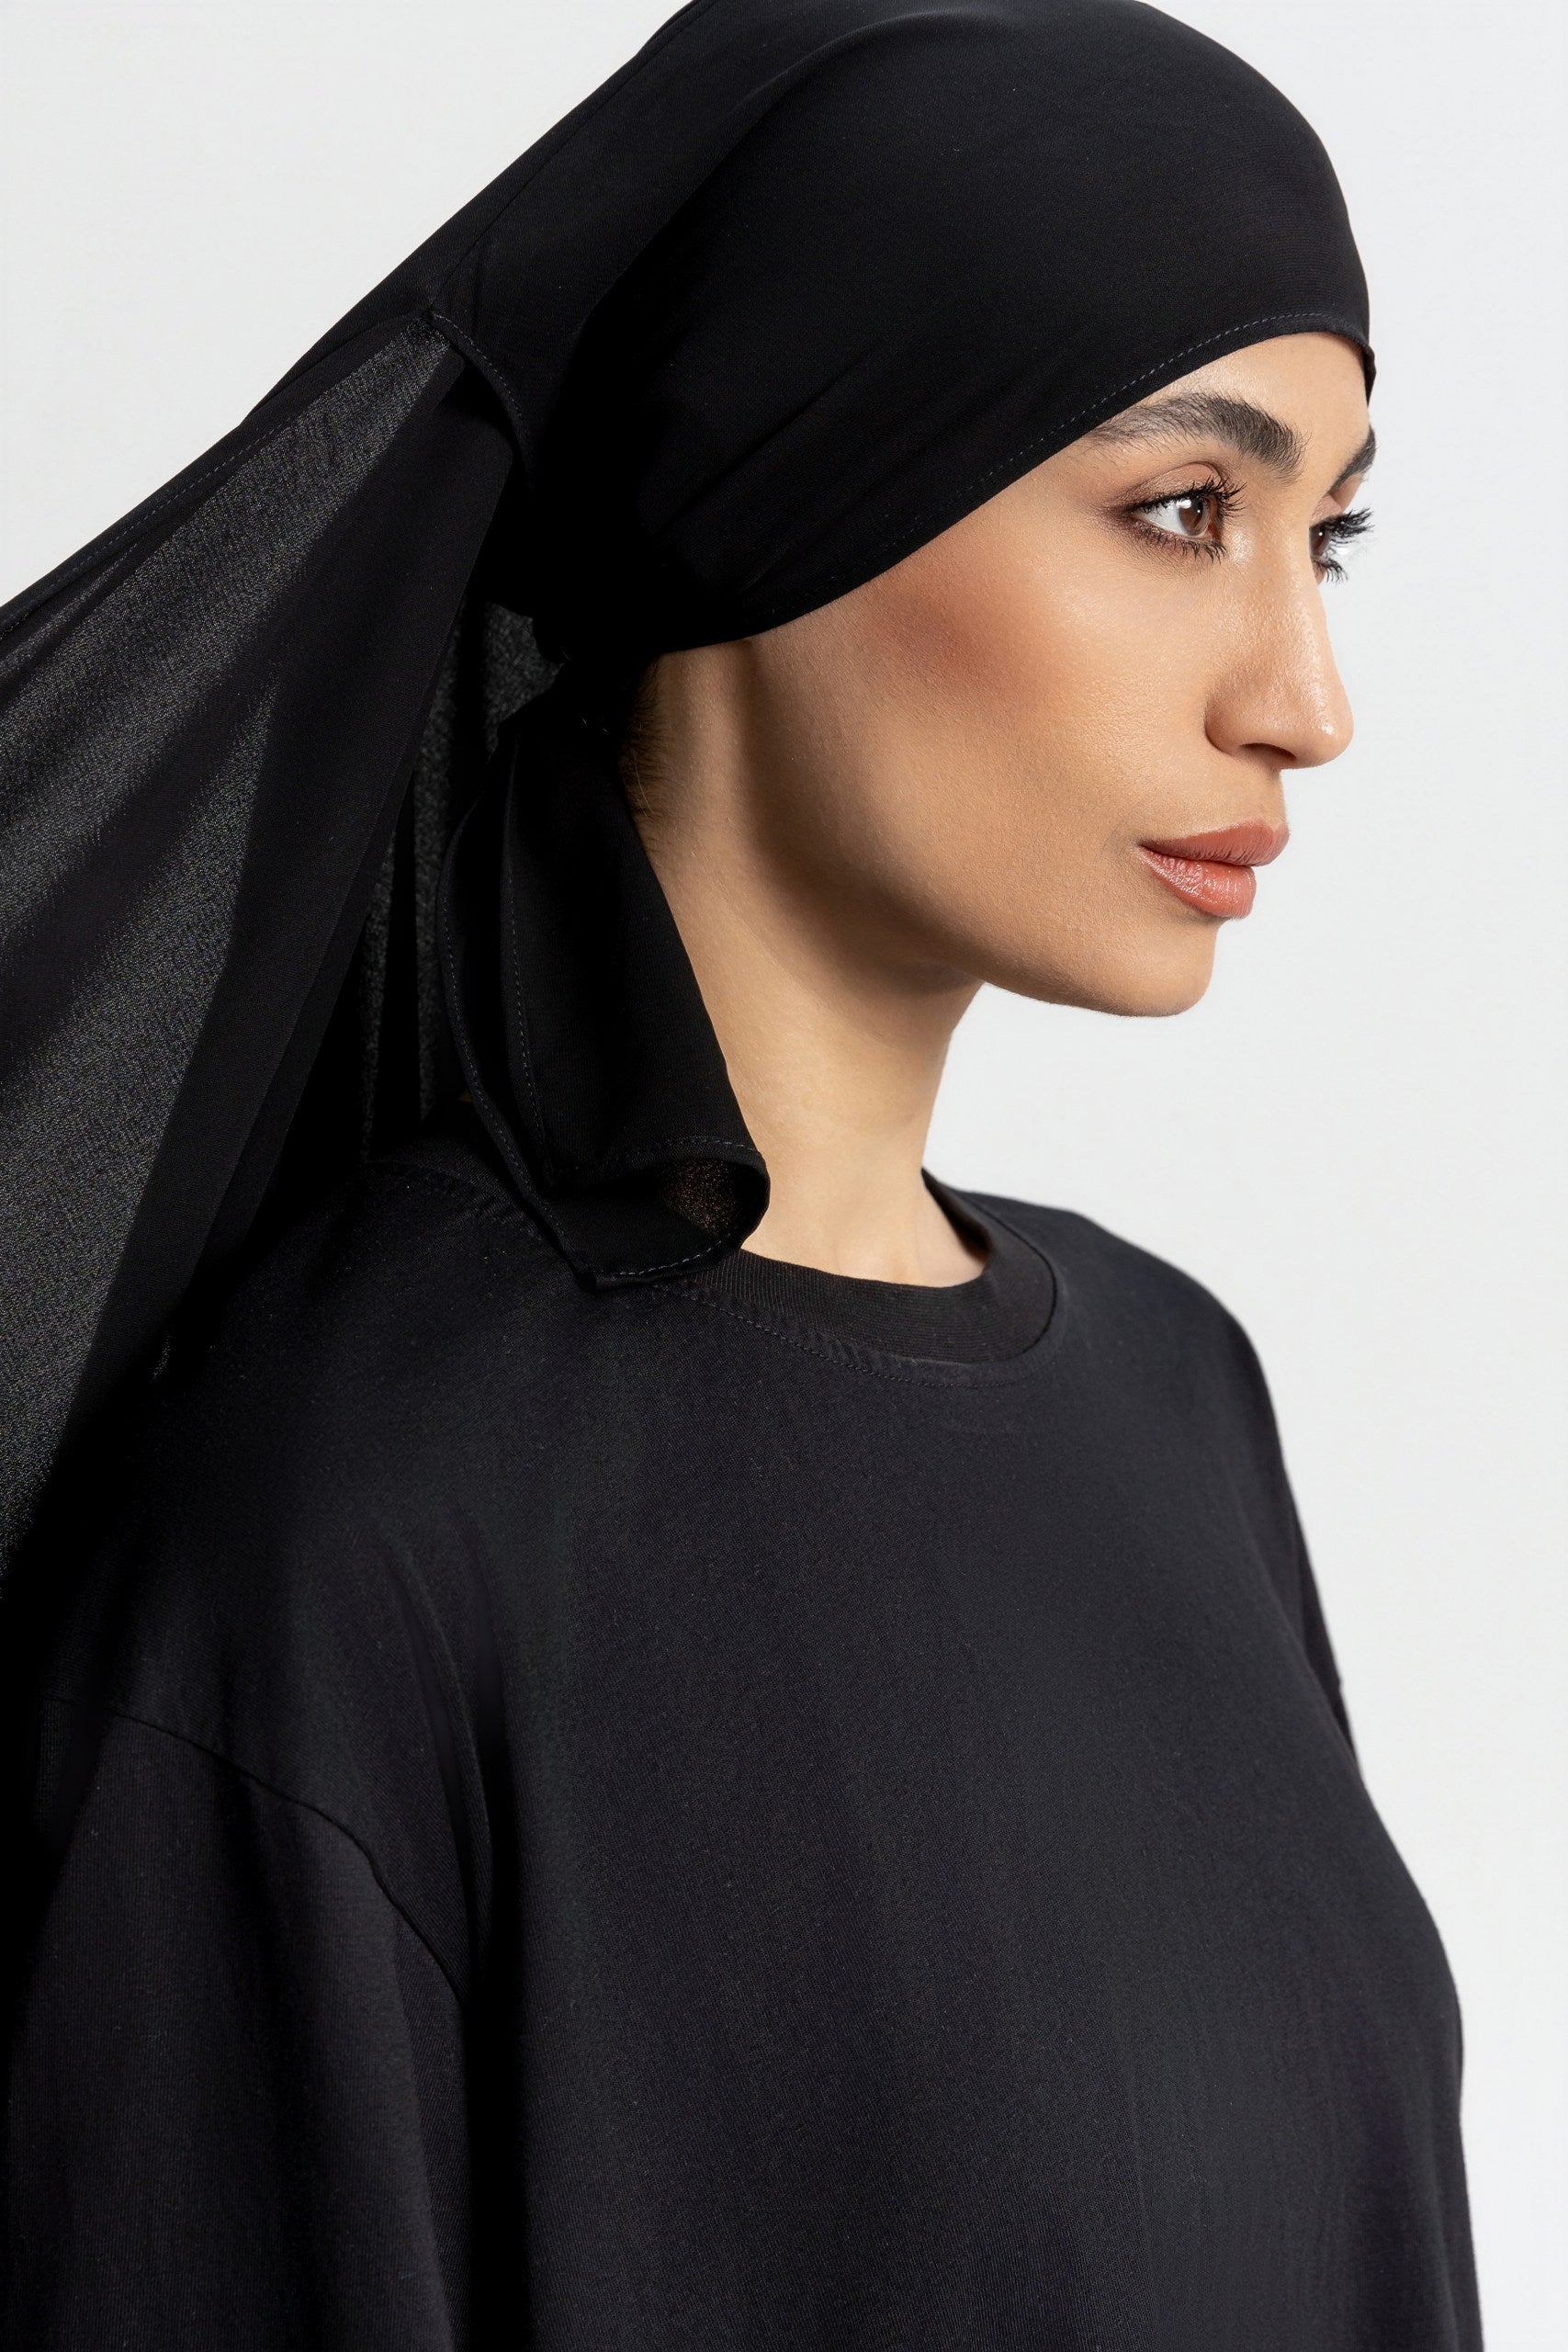 Maxi Hijab PAE Signature - Black